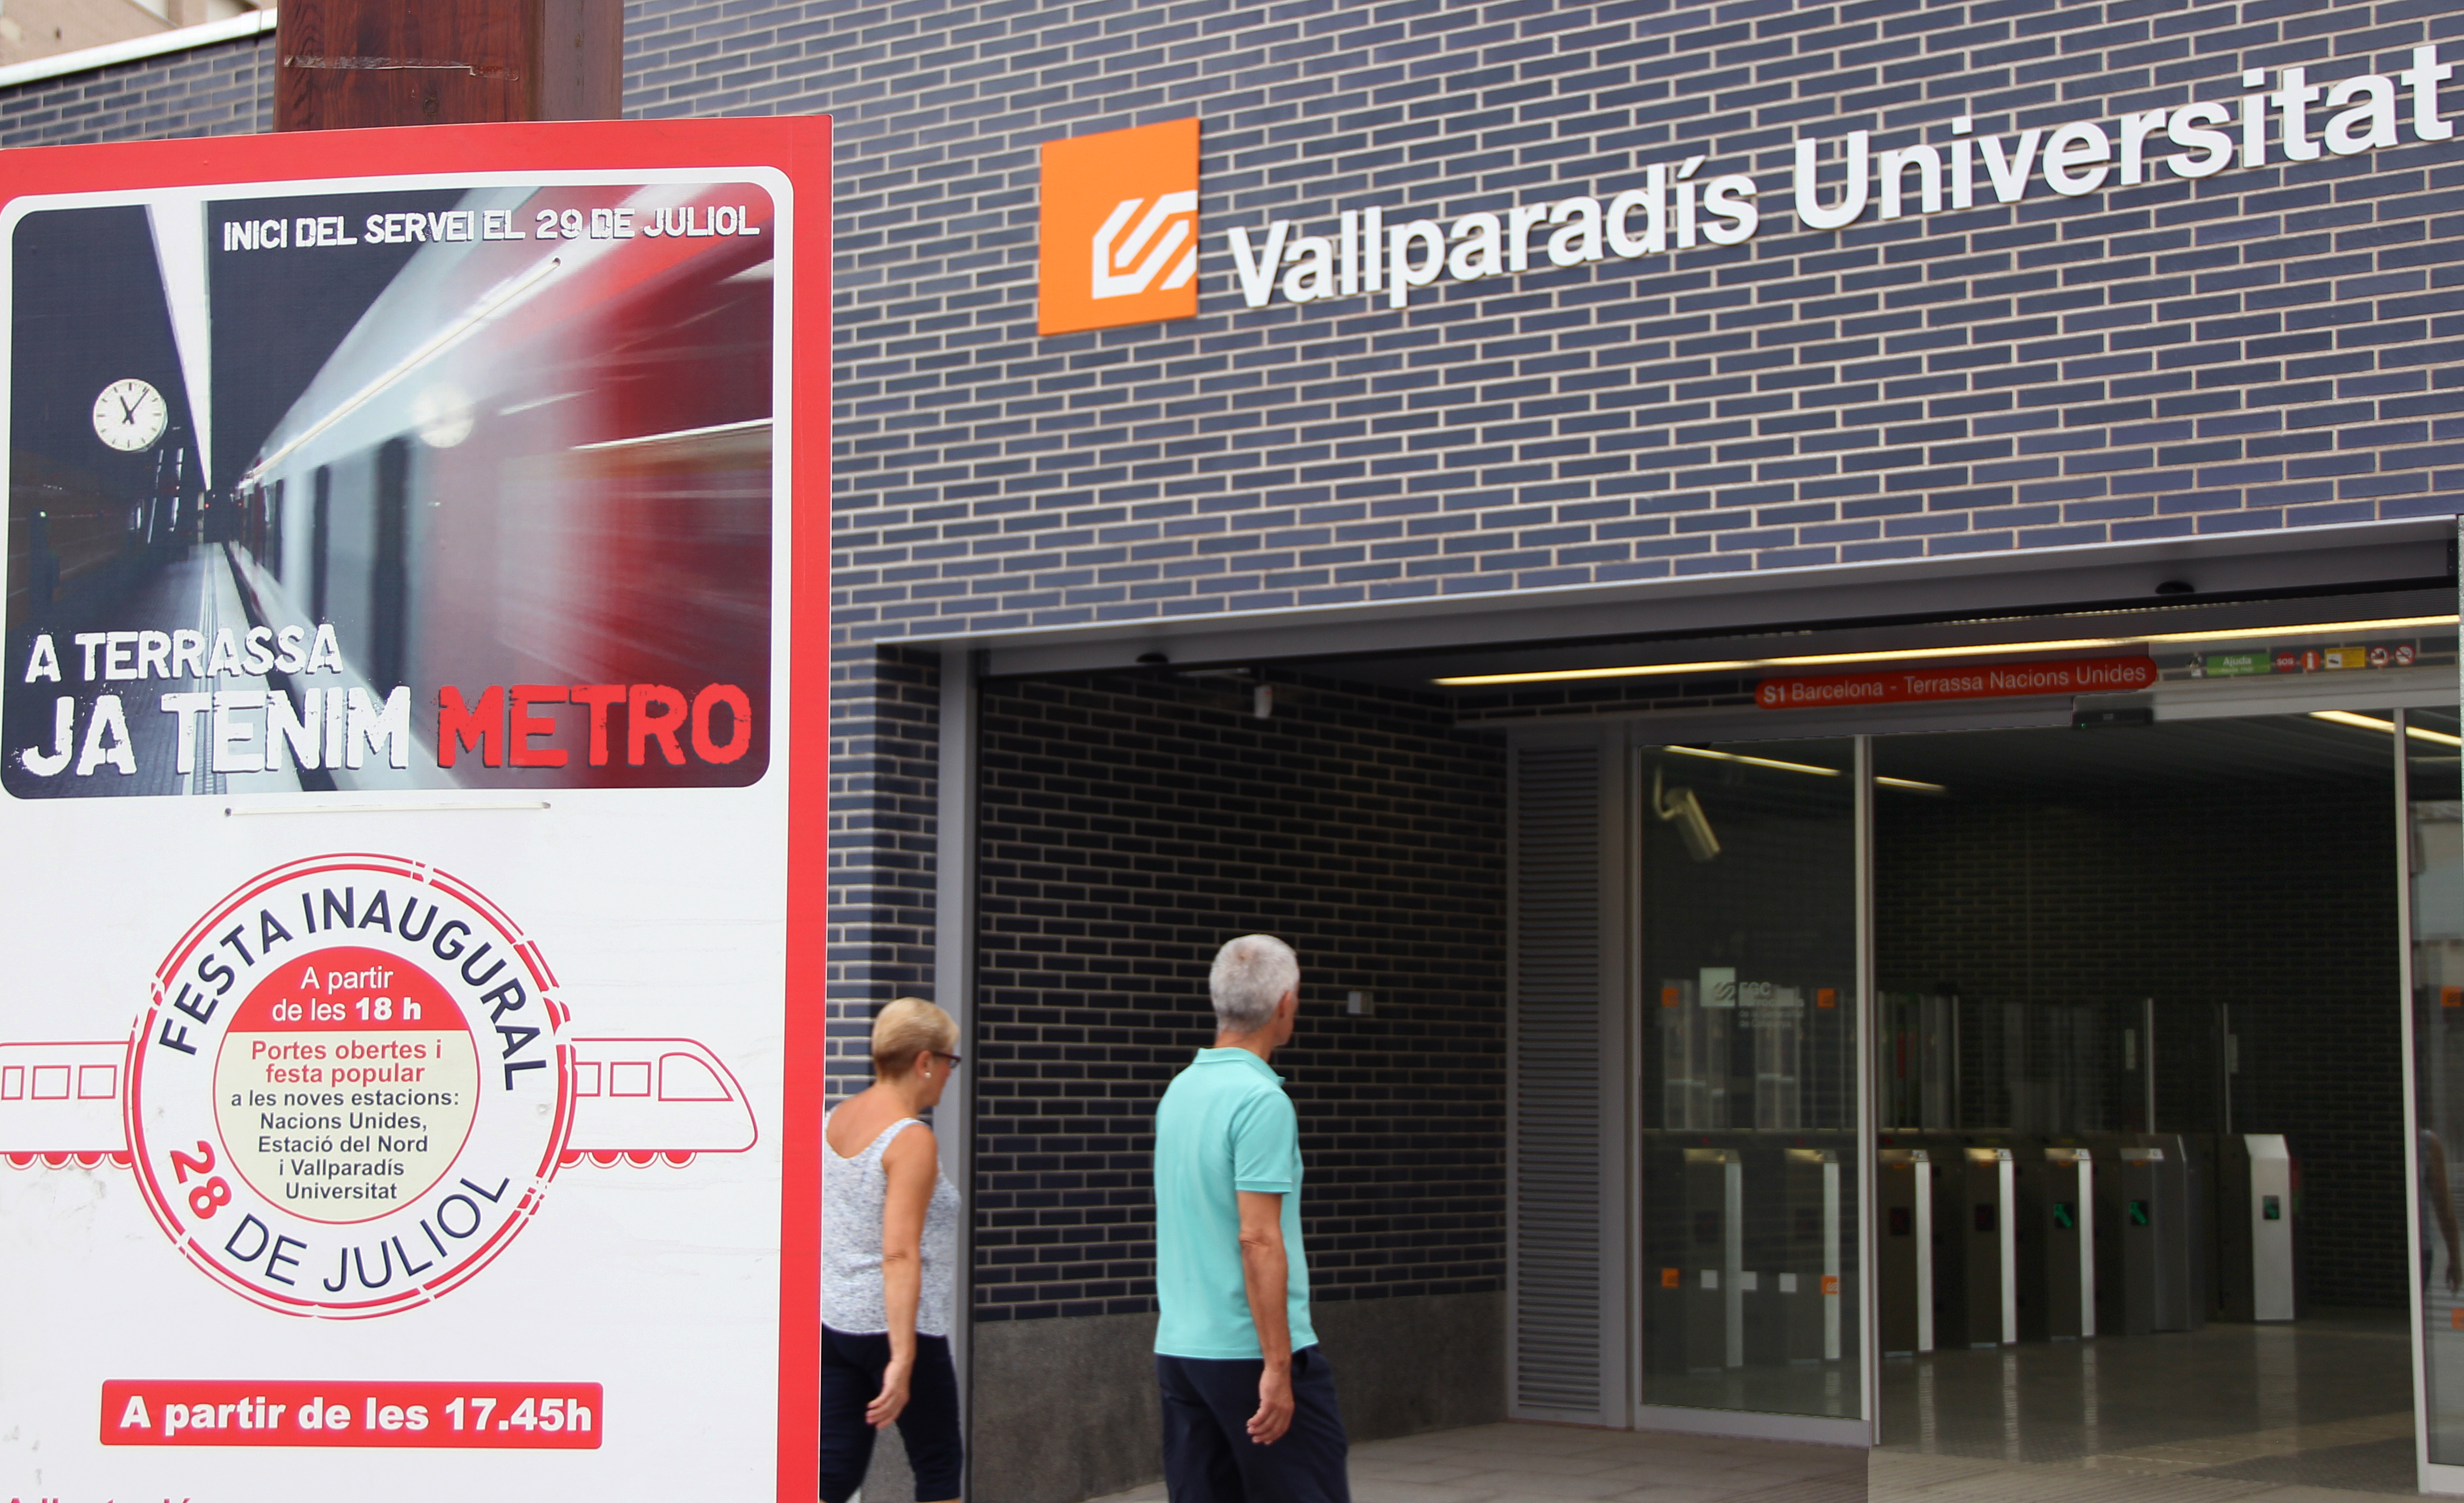 Estació FGC Vallparadís-Universitat